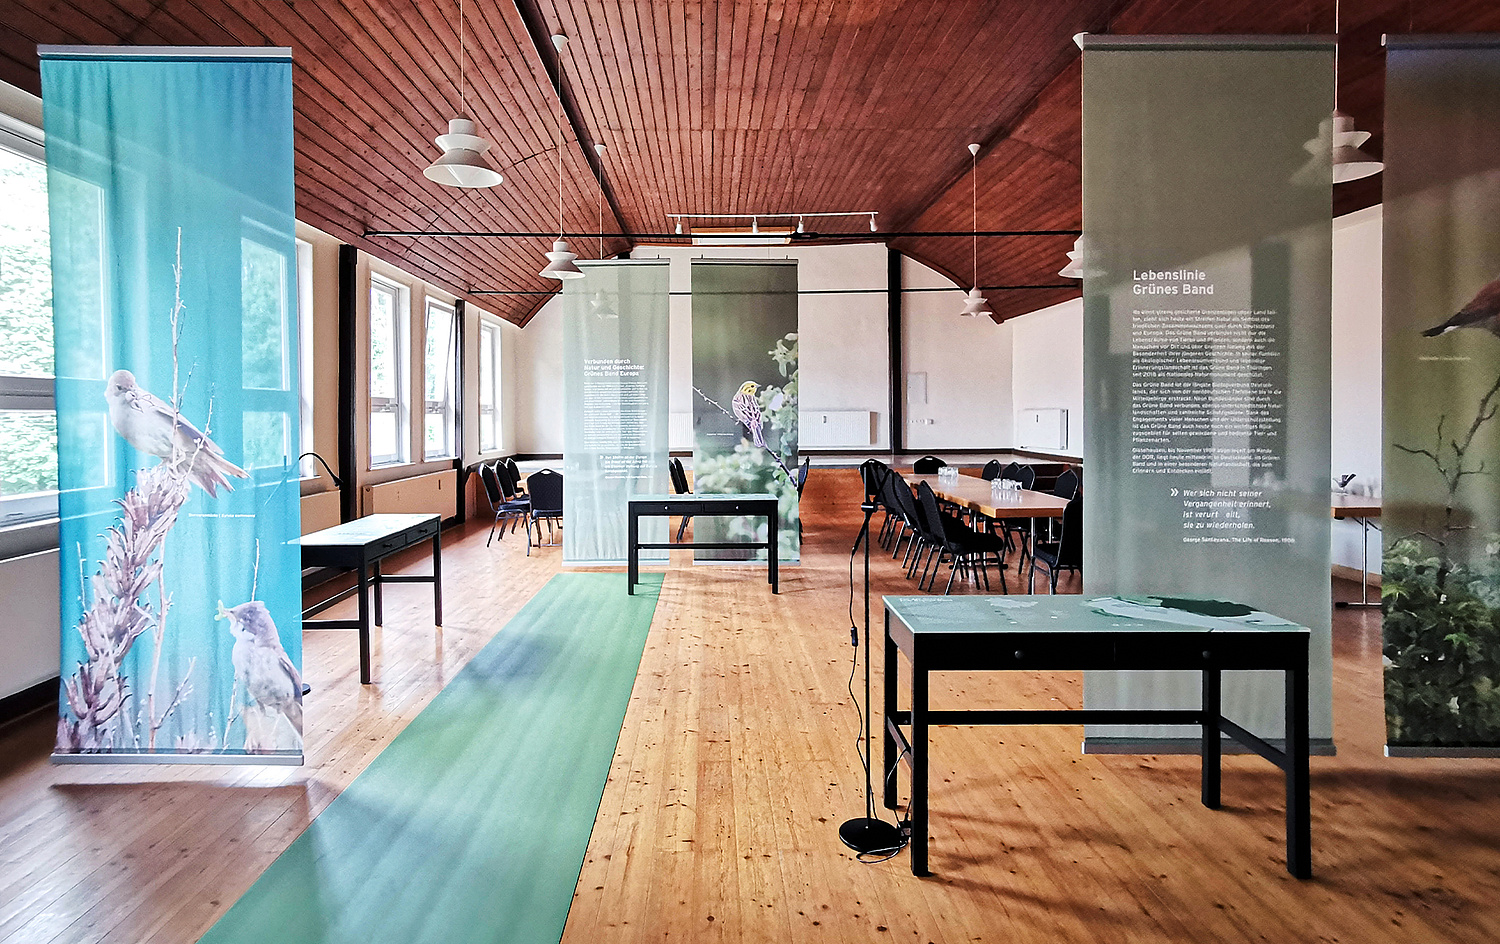 Das Bild zeigt einen Blick auf den Saal. Dieser ist mit von der Decke hängenden und im Design der Ausstellung gestalteten Stoffbannern gegliedert. (© Papenfuss | Atelier)